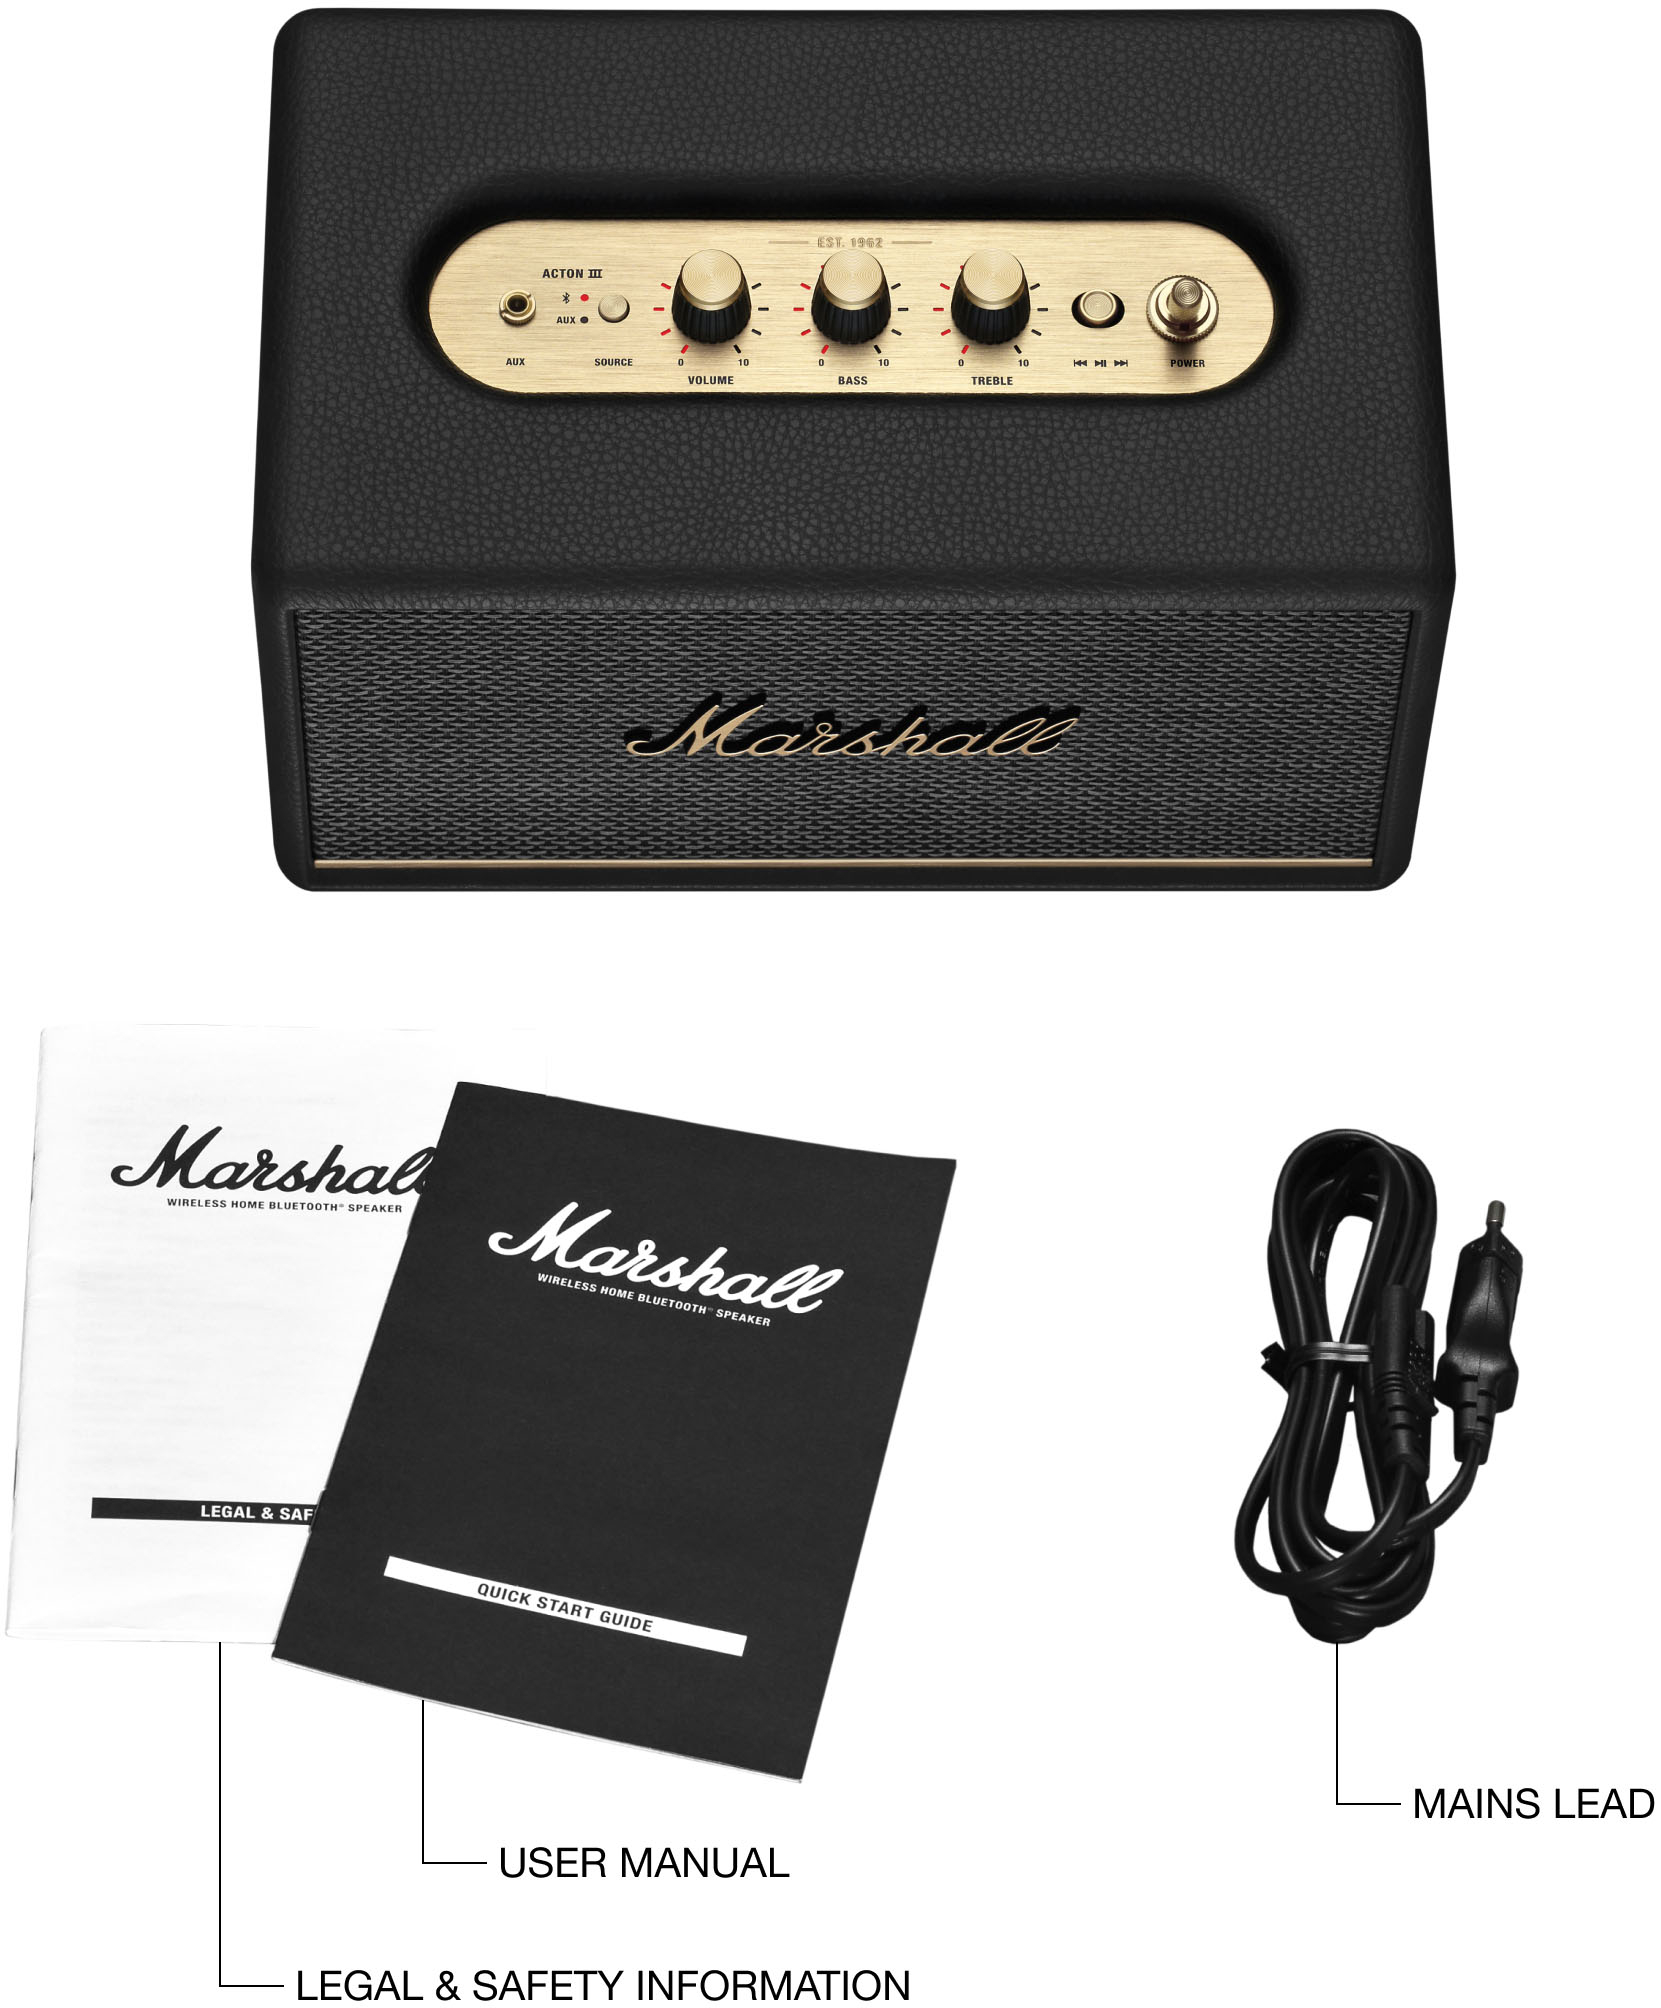 Marshall Acton III Bluetooth speaker